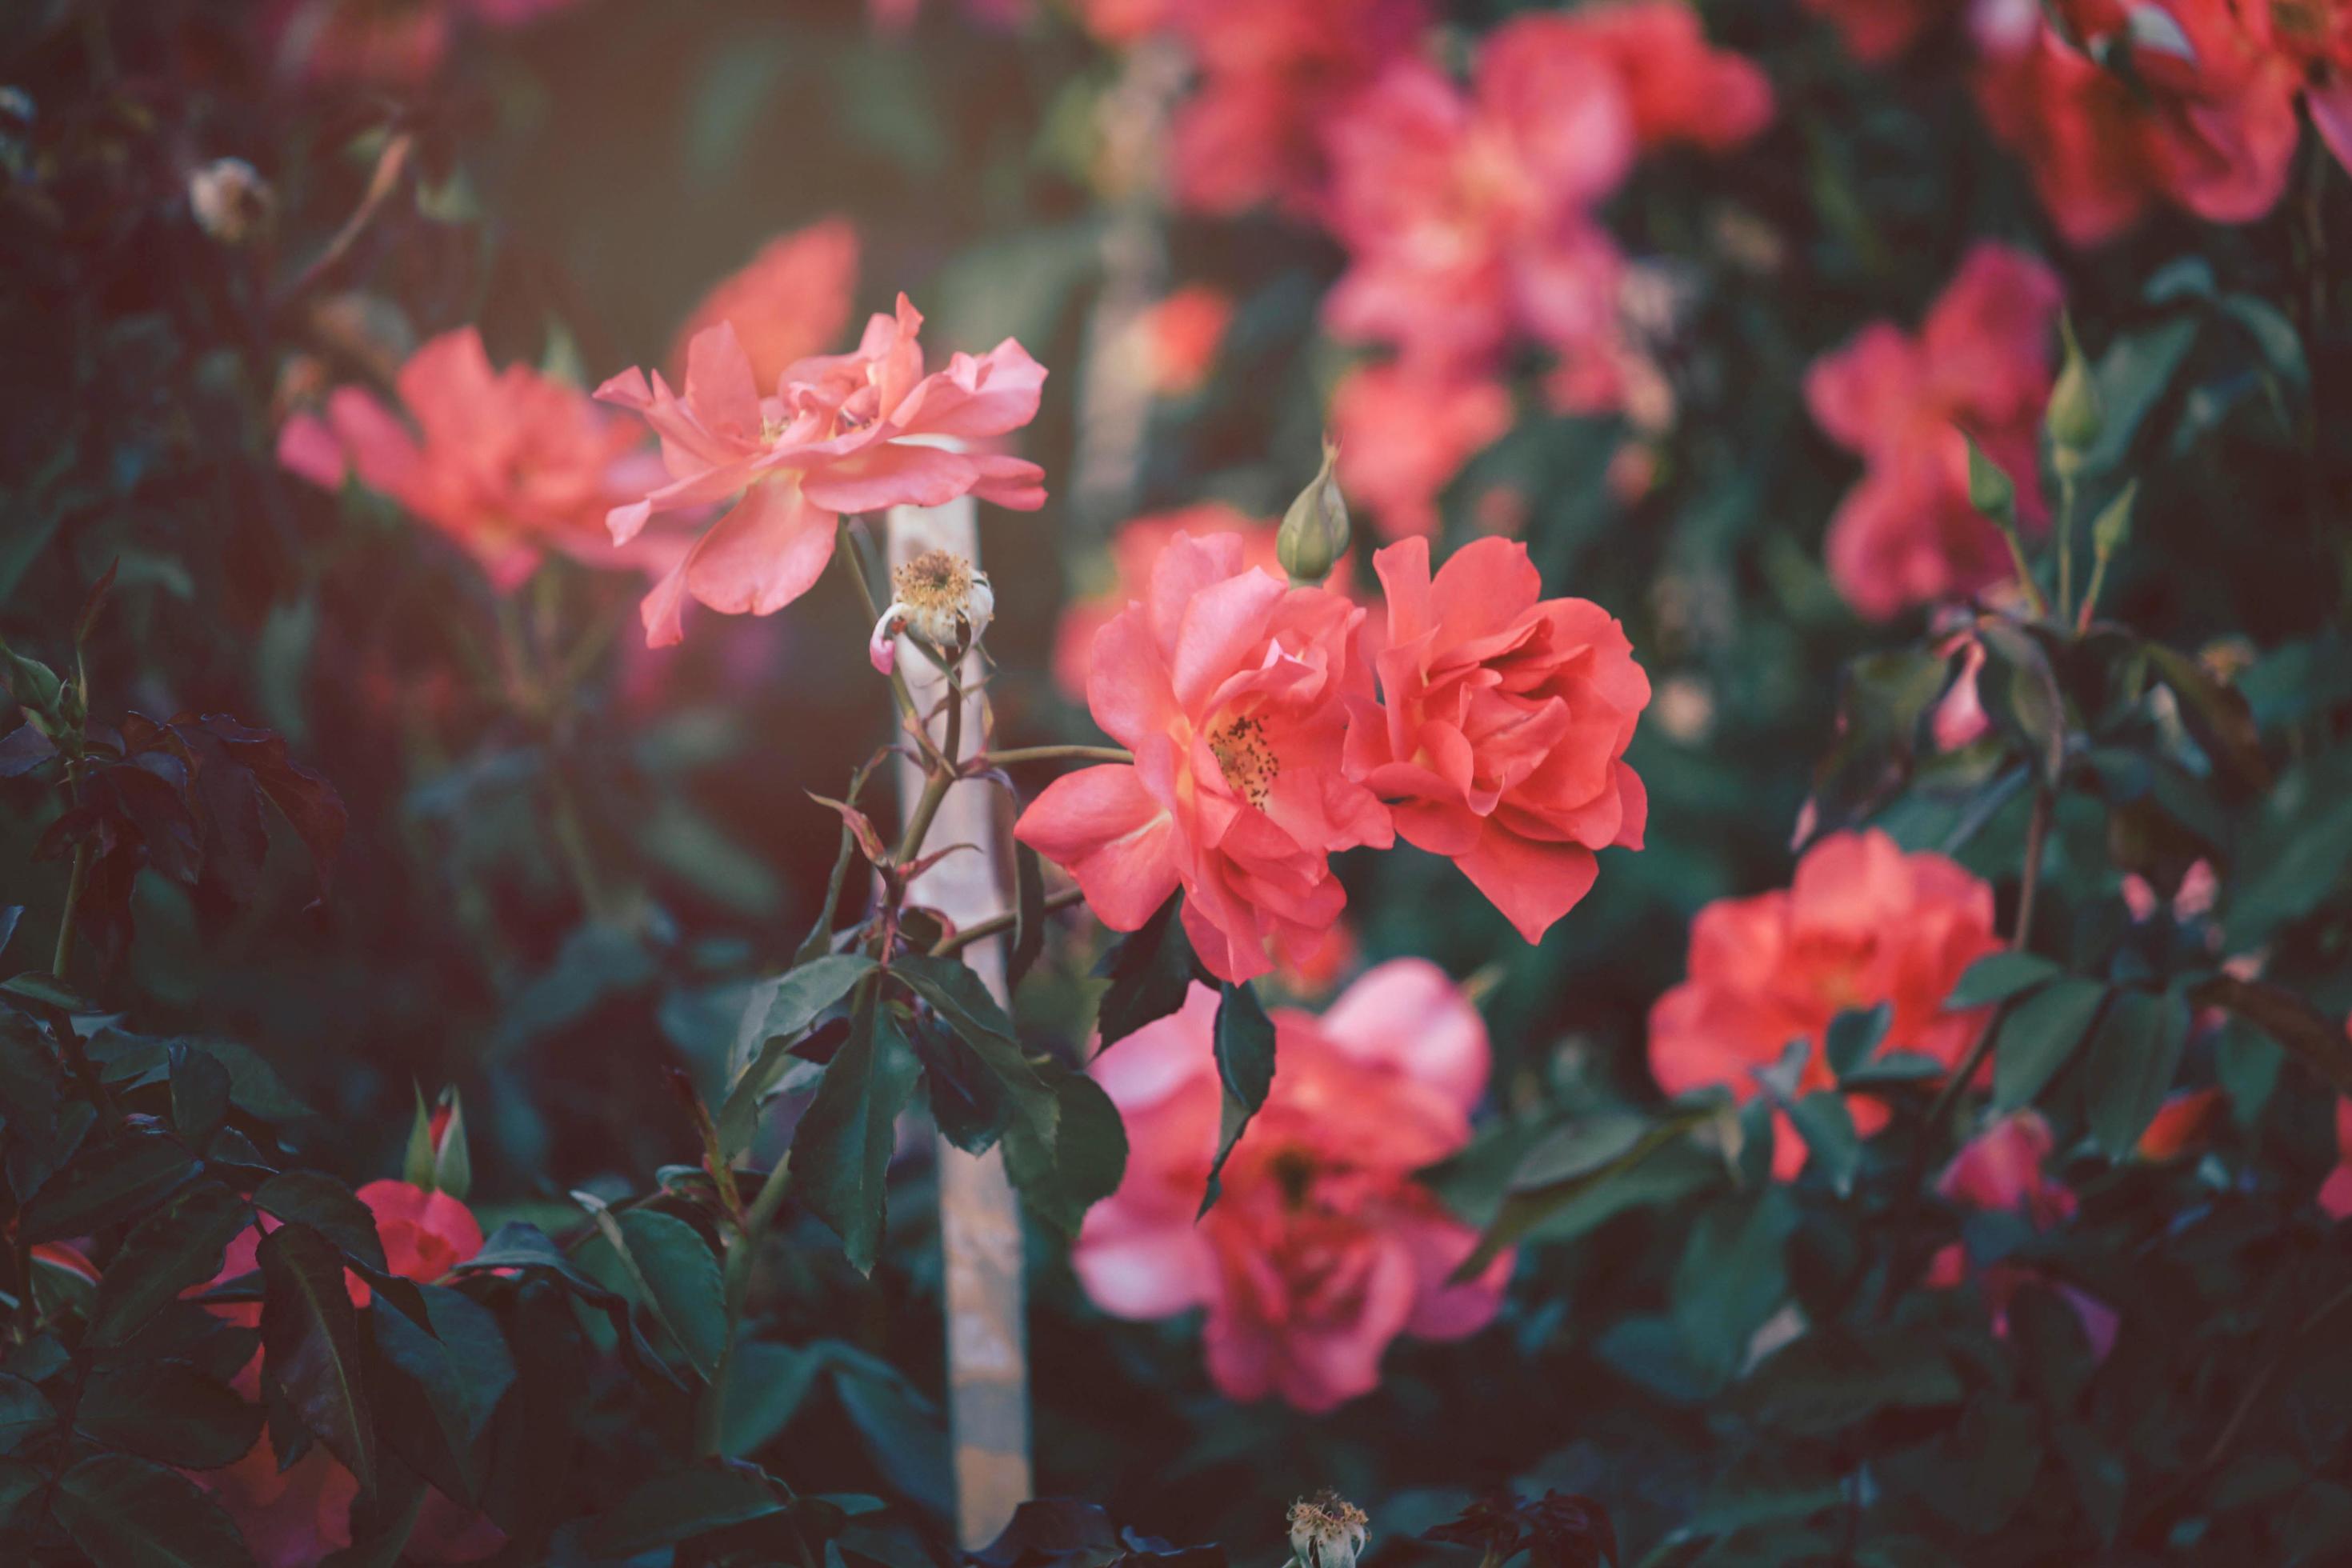  Rote Rosen Hintergrundbild 2940x1960. Rote Rosen Blühen Im Sommergarten, Eine Der Duftendsten Blumen, Am Besten Riechende, Schöne Und Romantische Blumen 7353852 Stock Photo Bei Vecteezy